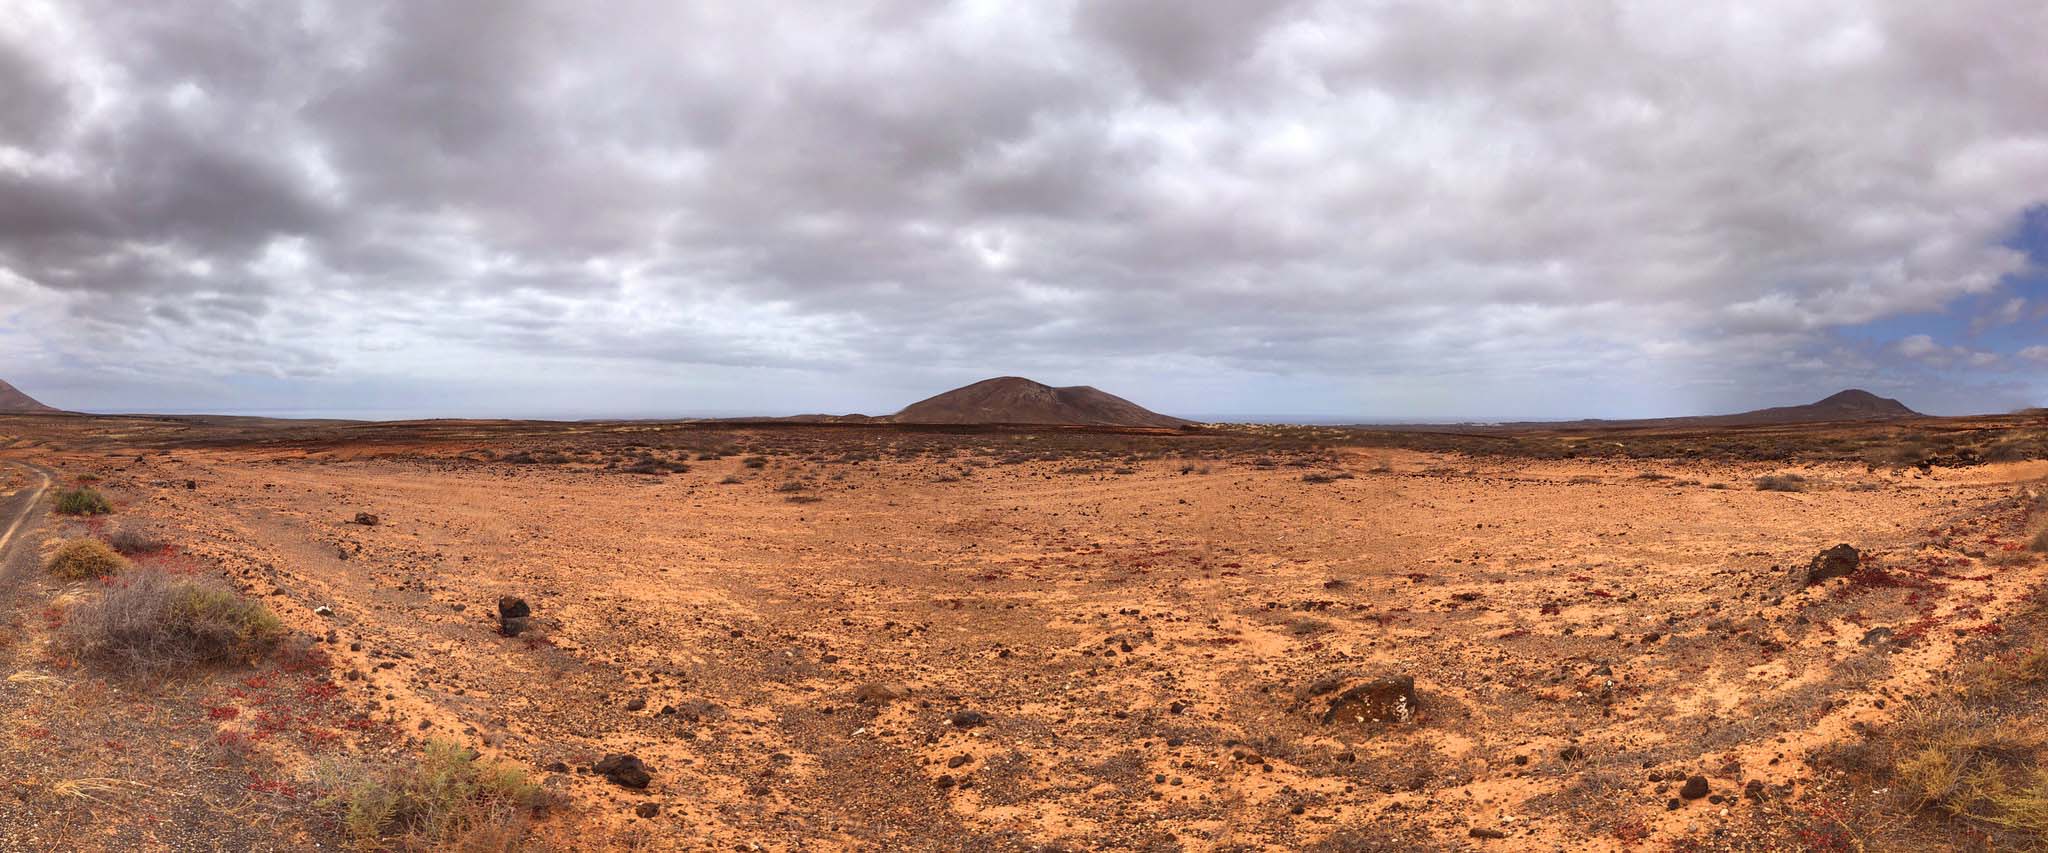 mars landscape of lanzarote